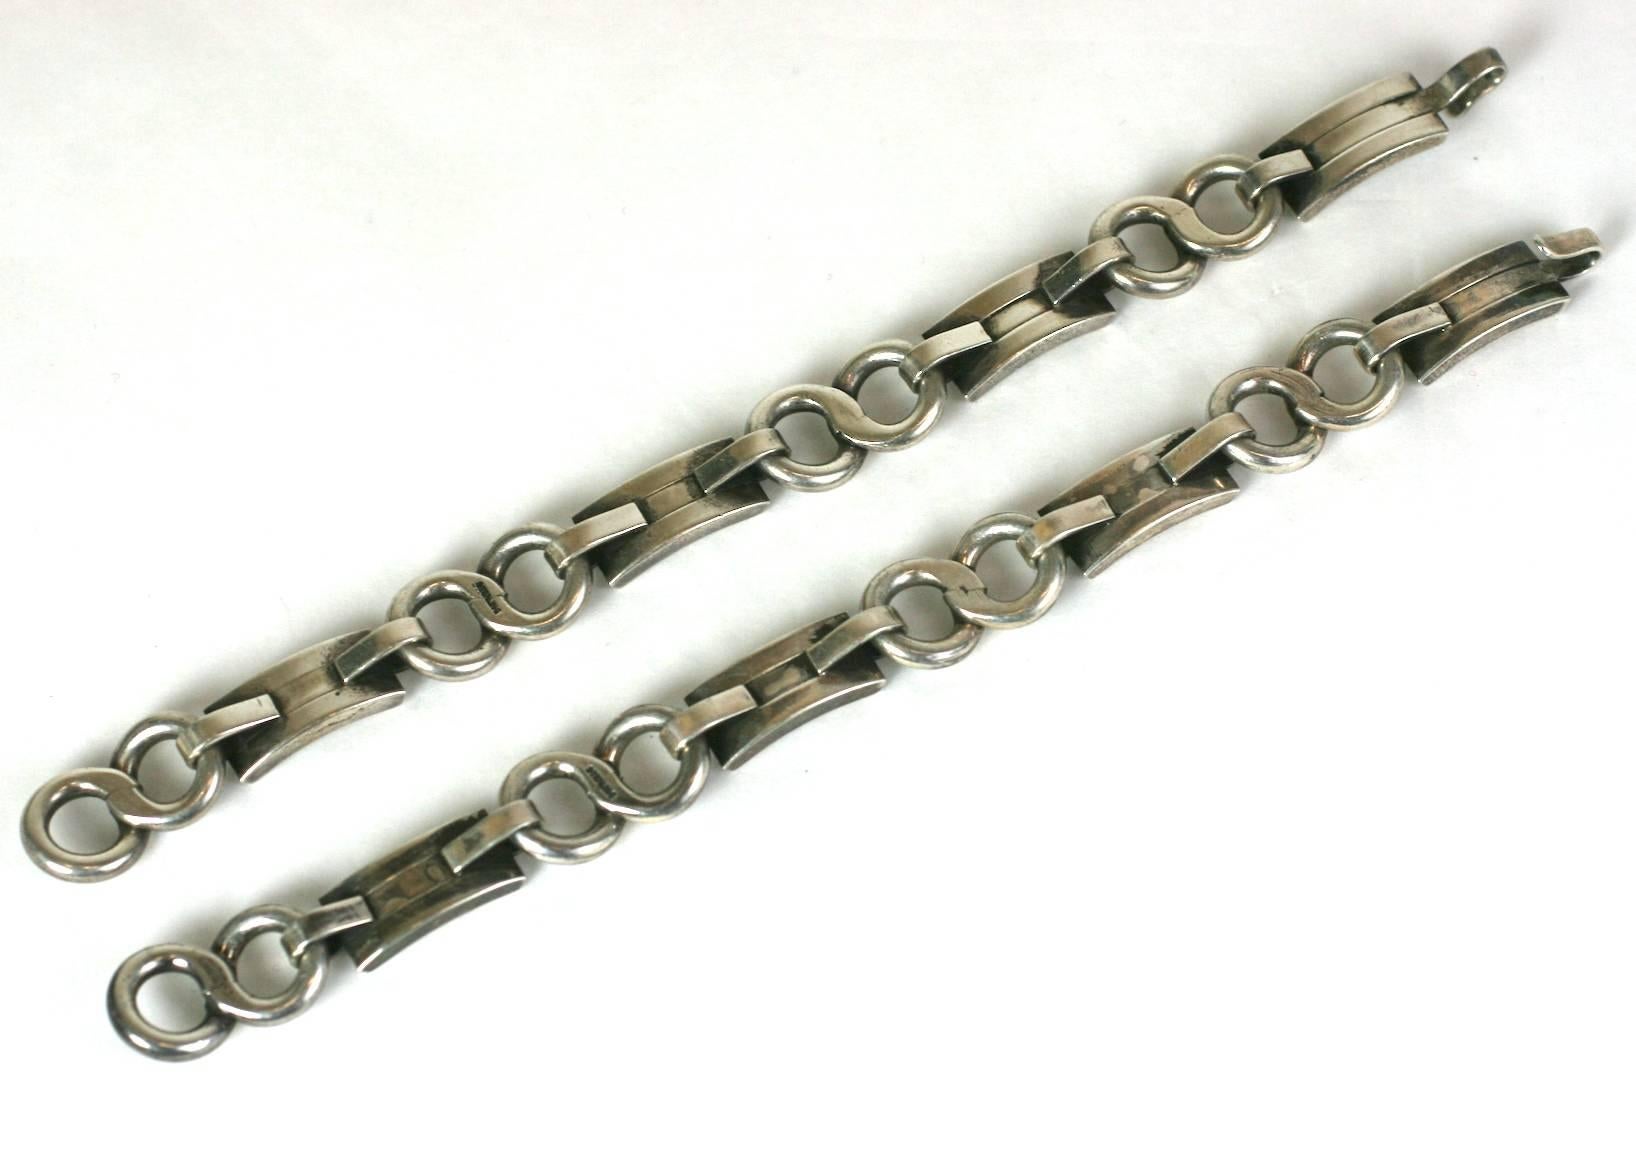 Paire d'étonnants bracelets modernistes en sterling, option collier lorsque les deux sont combinés. Façonné à la main par un orfèvre talentueux en argent sterling de très forte épaisseur. 
Merveilleux design avec des arcs déco courbes reliés par des